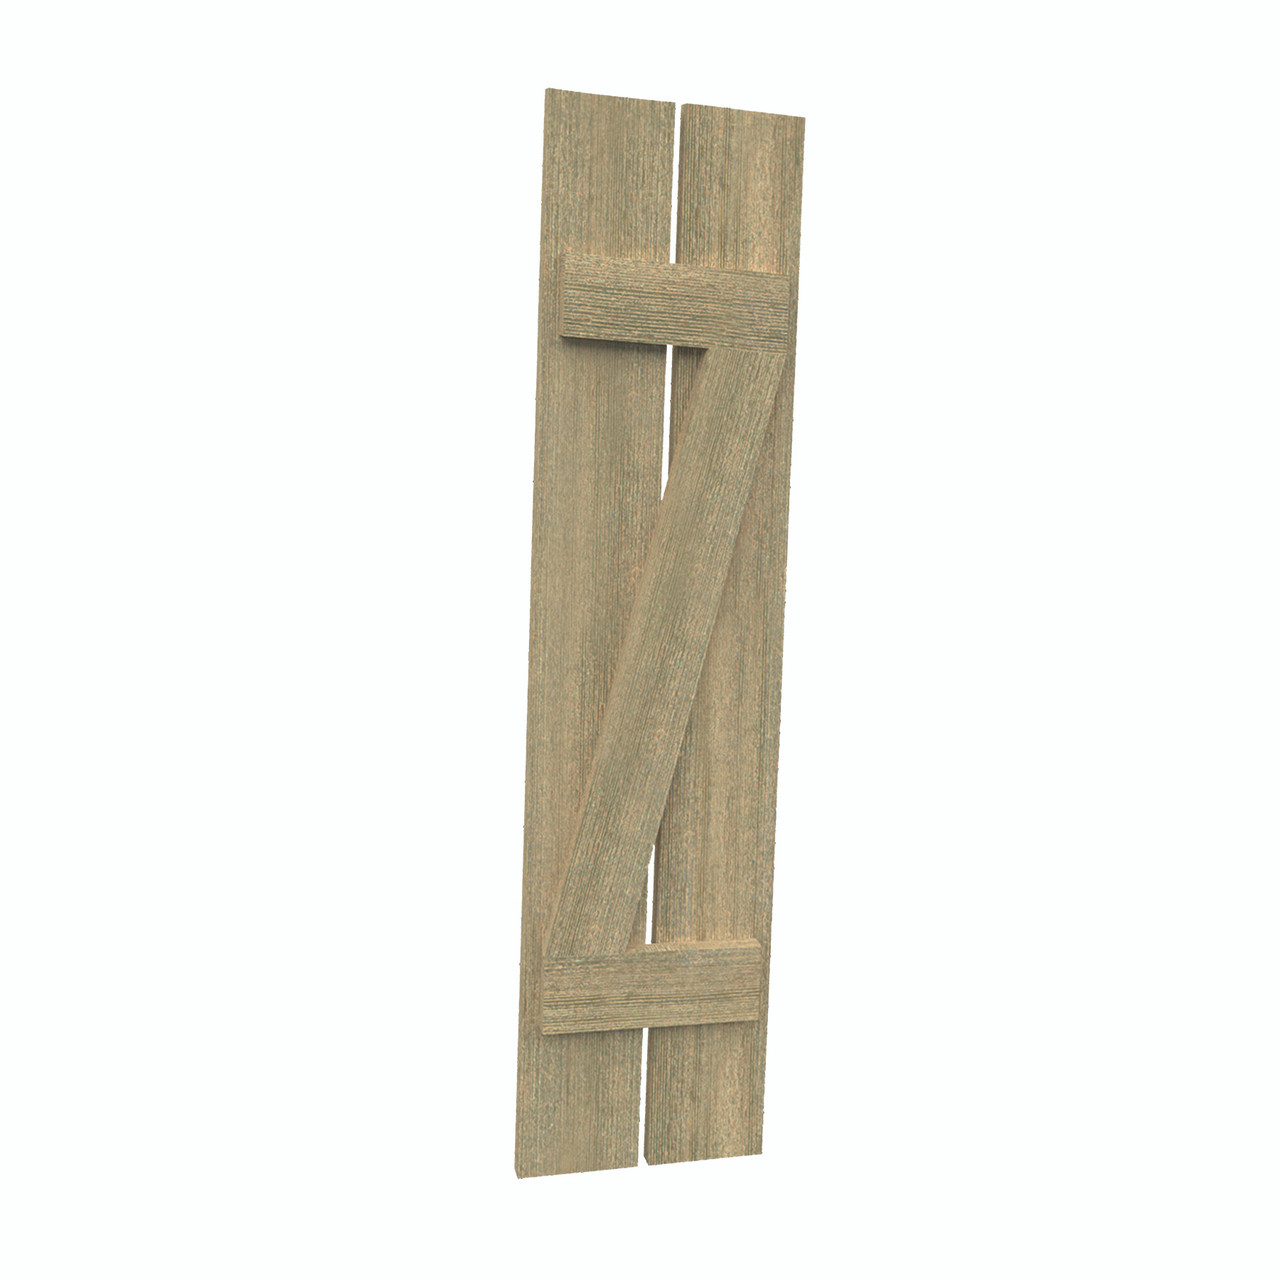 12 inch by 105 inch Plank Shutter with 2-Plank, Z-Batten